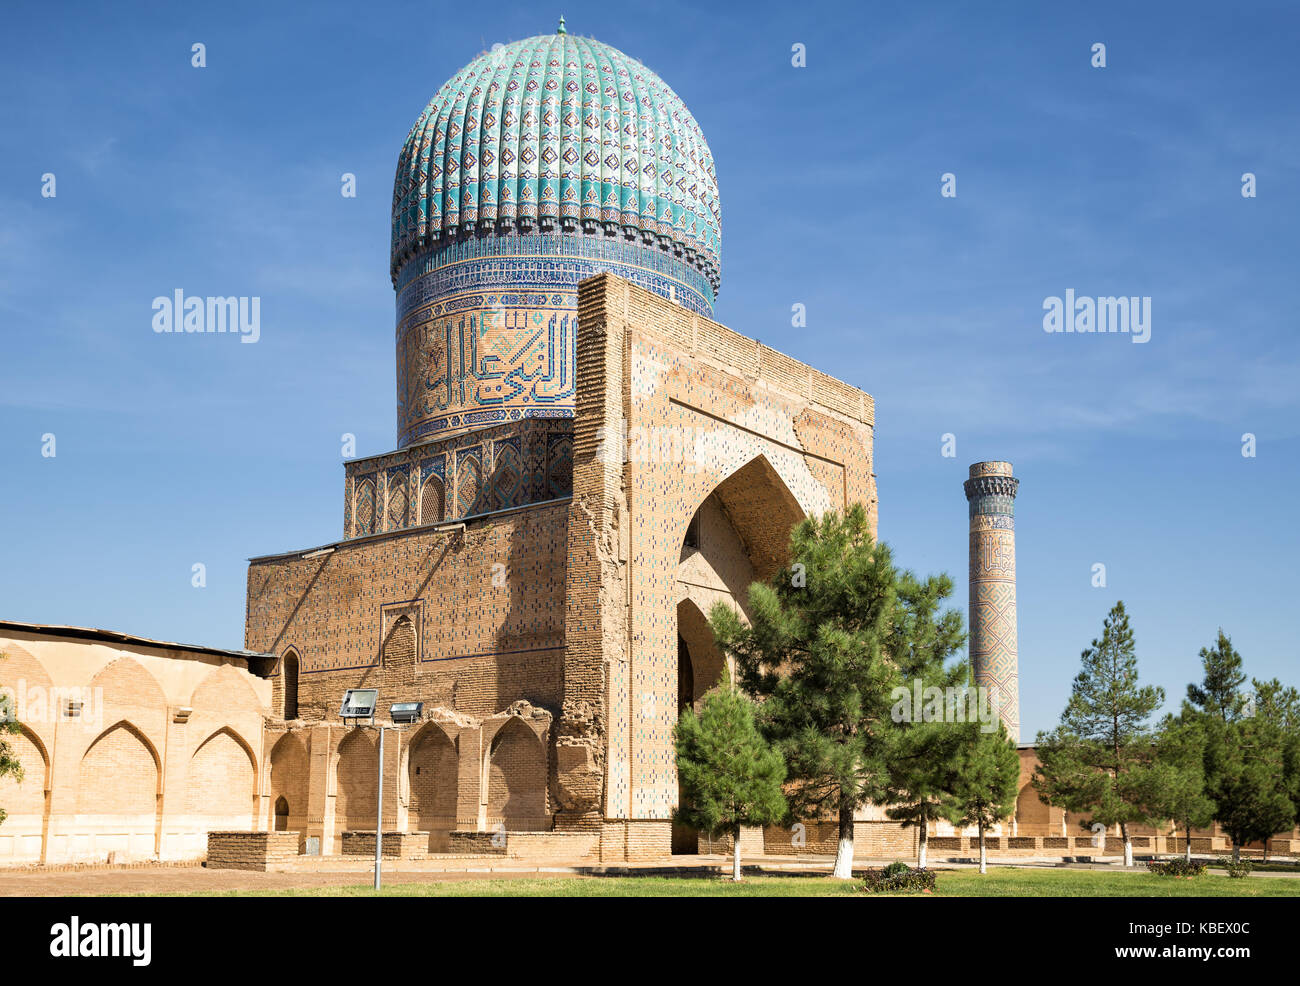 Bibi-Khanym mosque in Samarkand, Uzbekistan Stock Photo